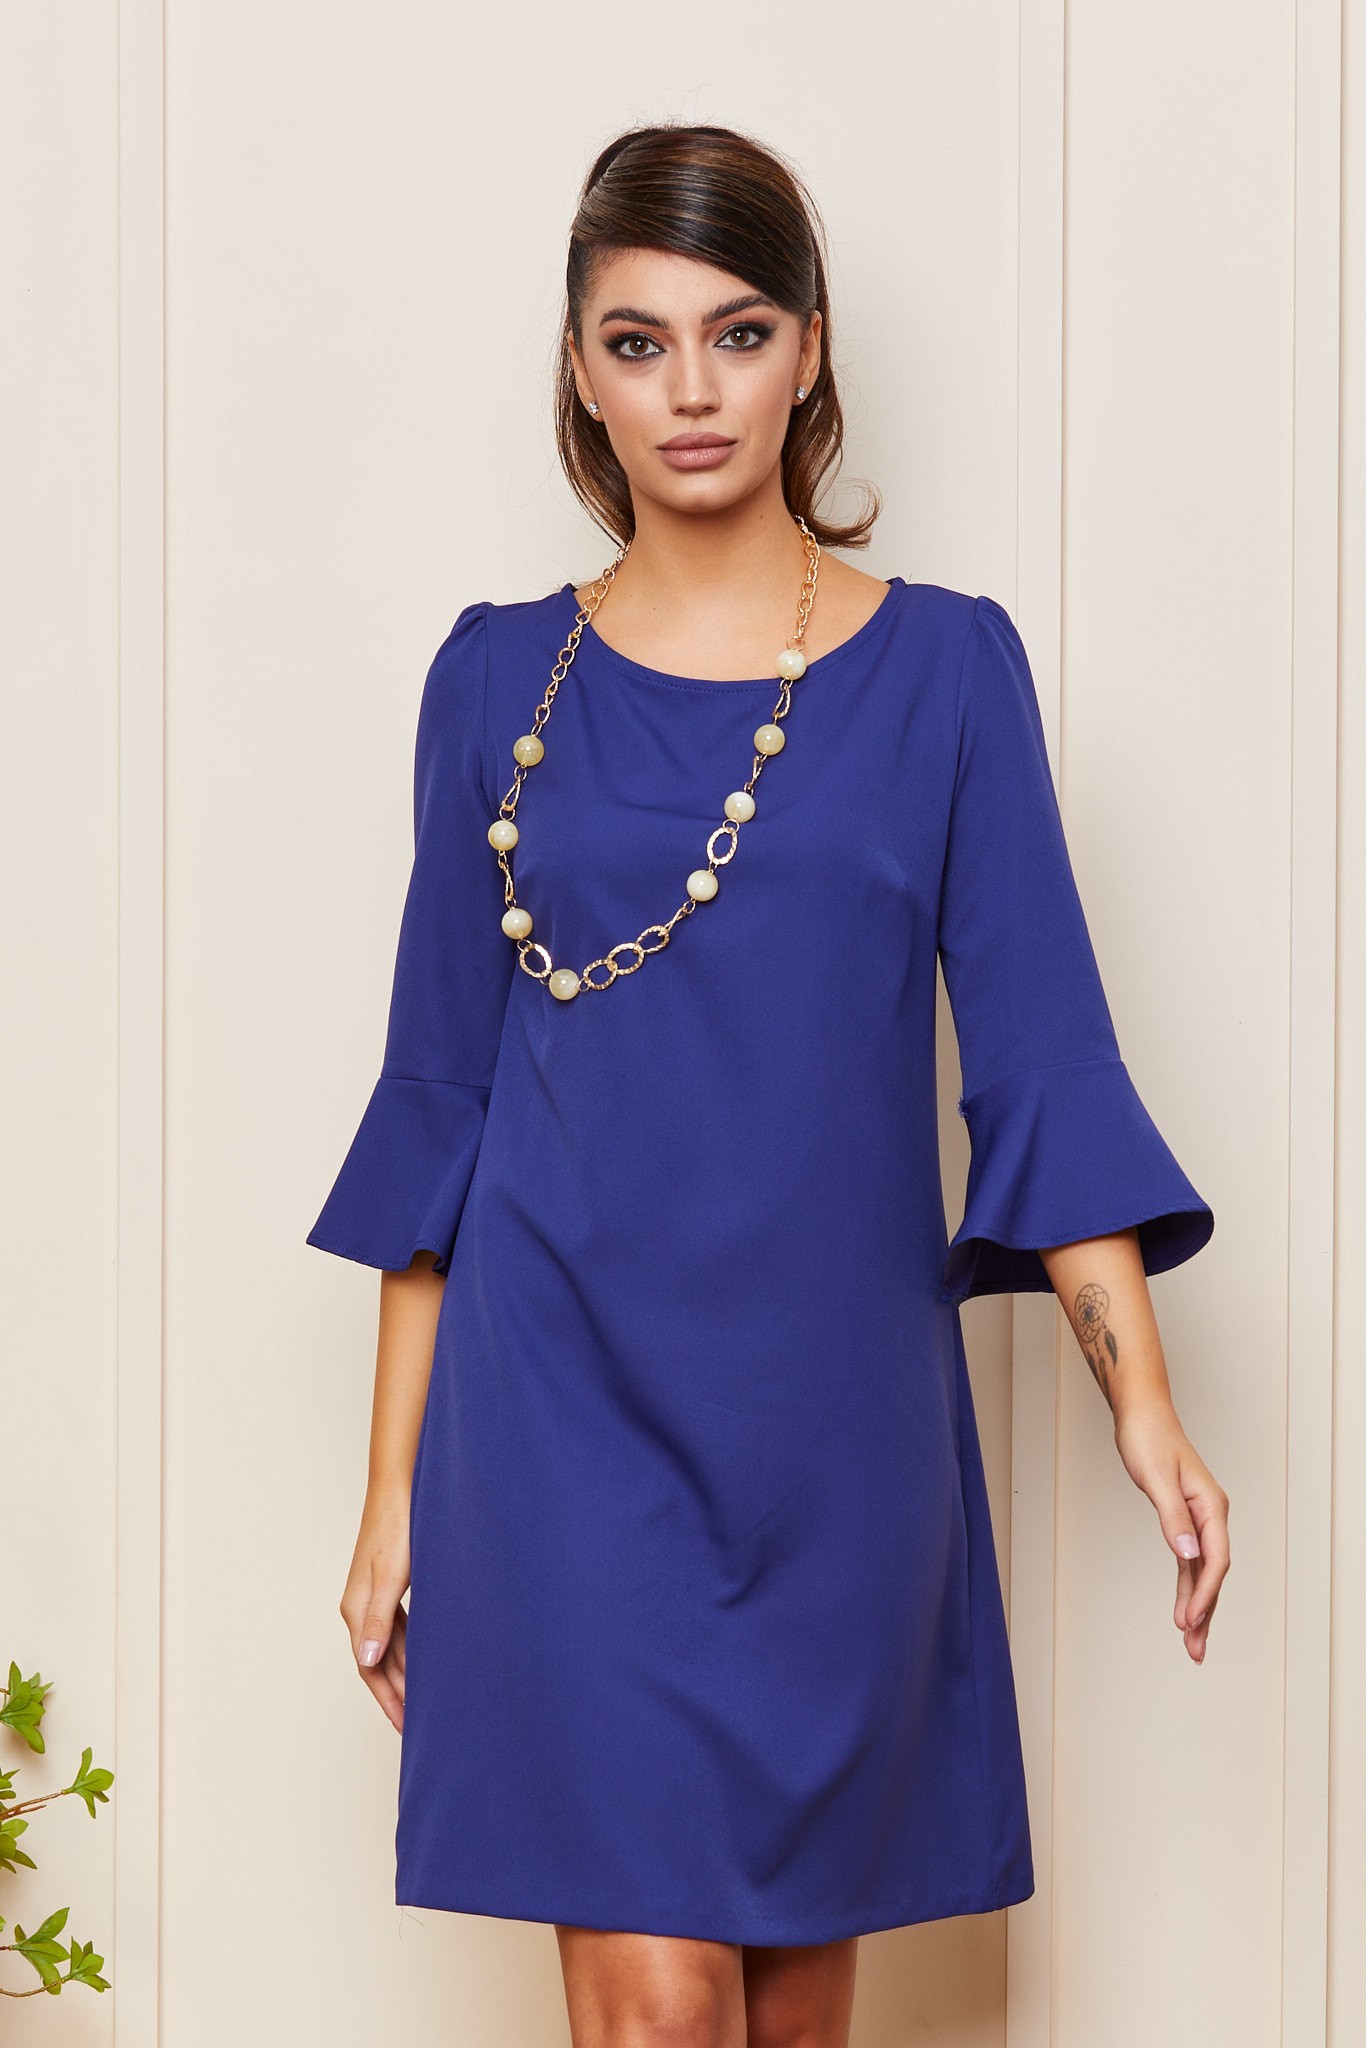 Μπλε Καθημερινό Φόρεμα Με Κολιέ Claudette T4189 3